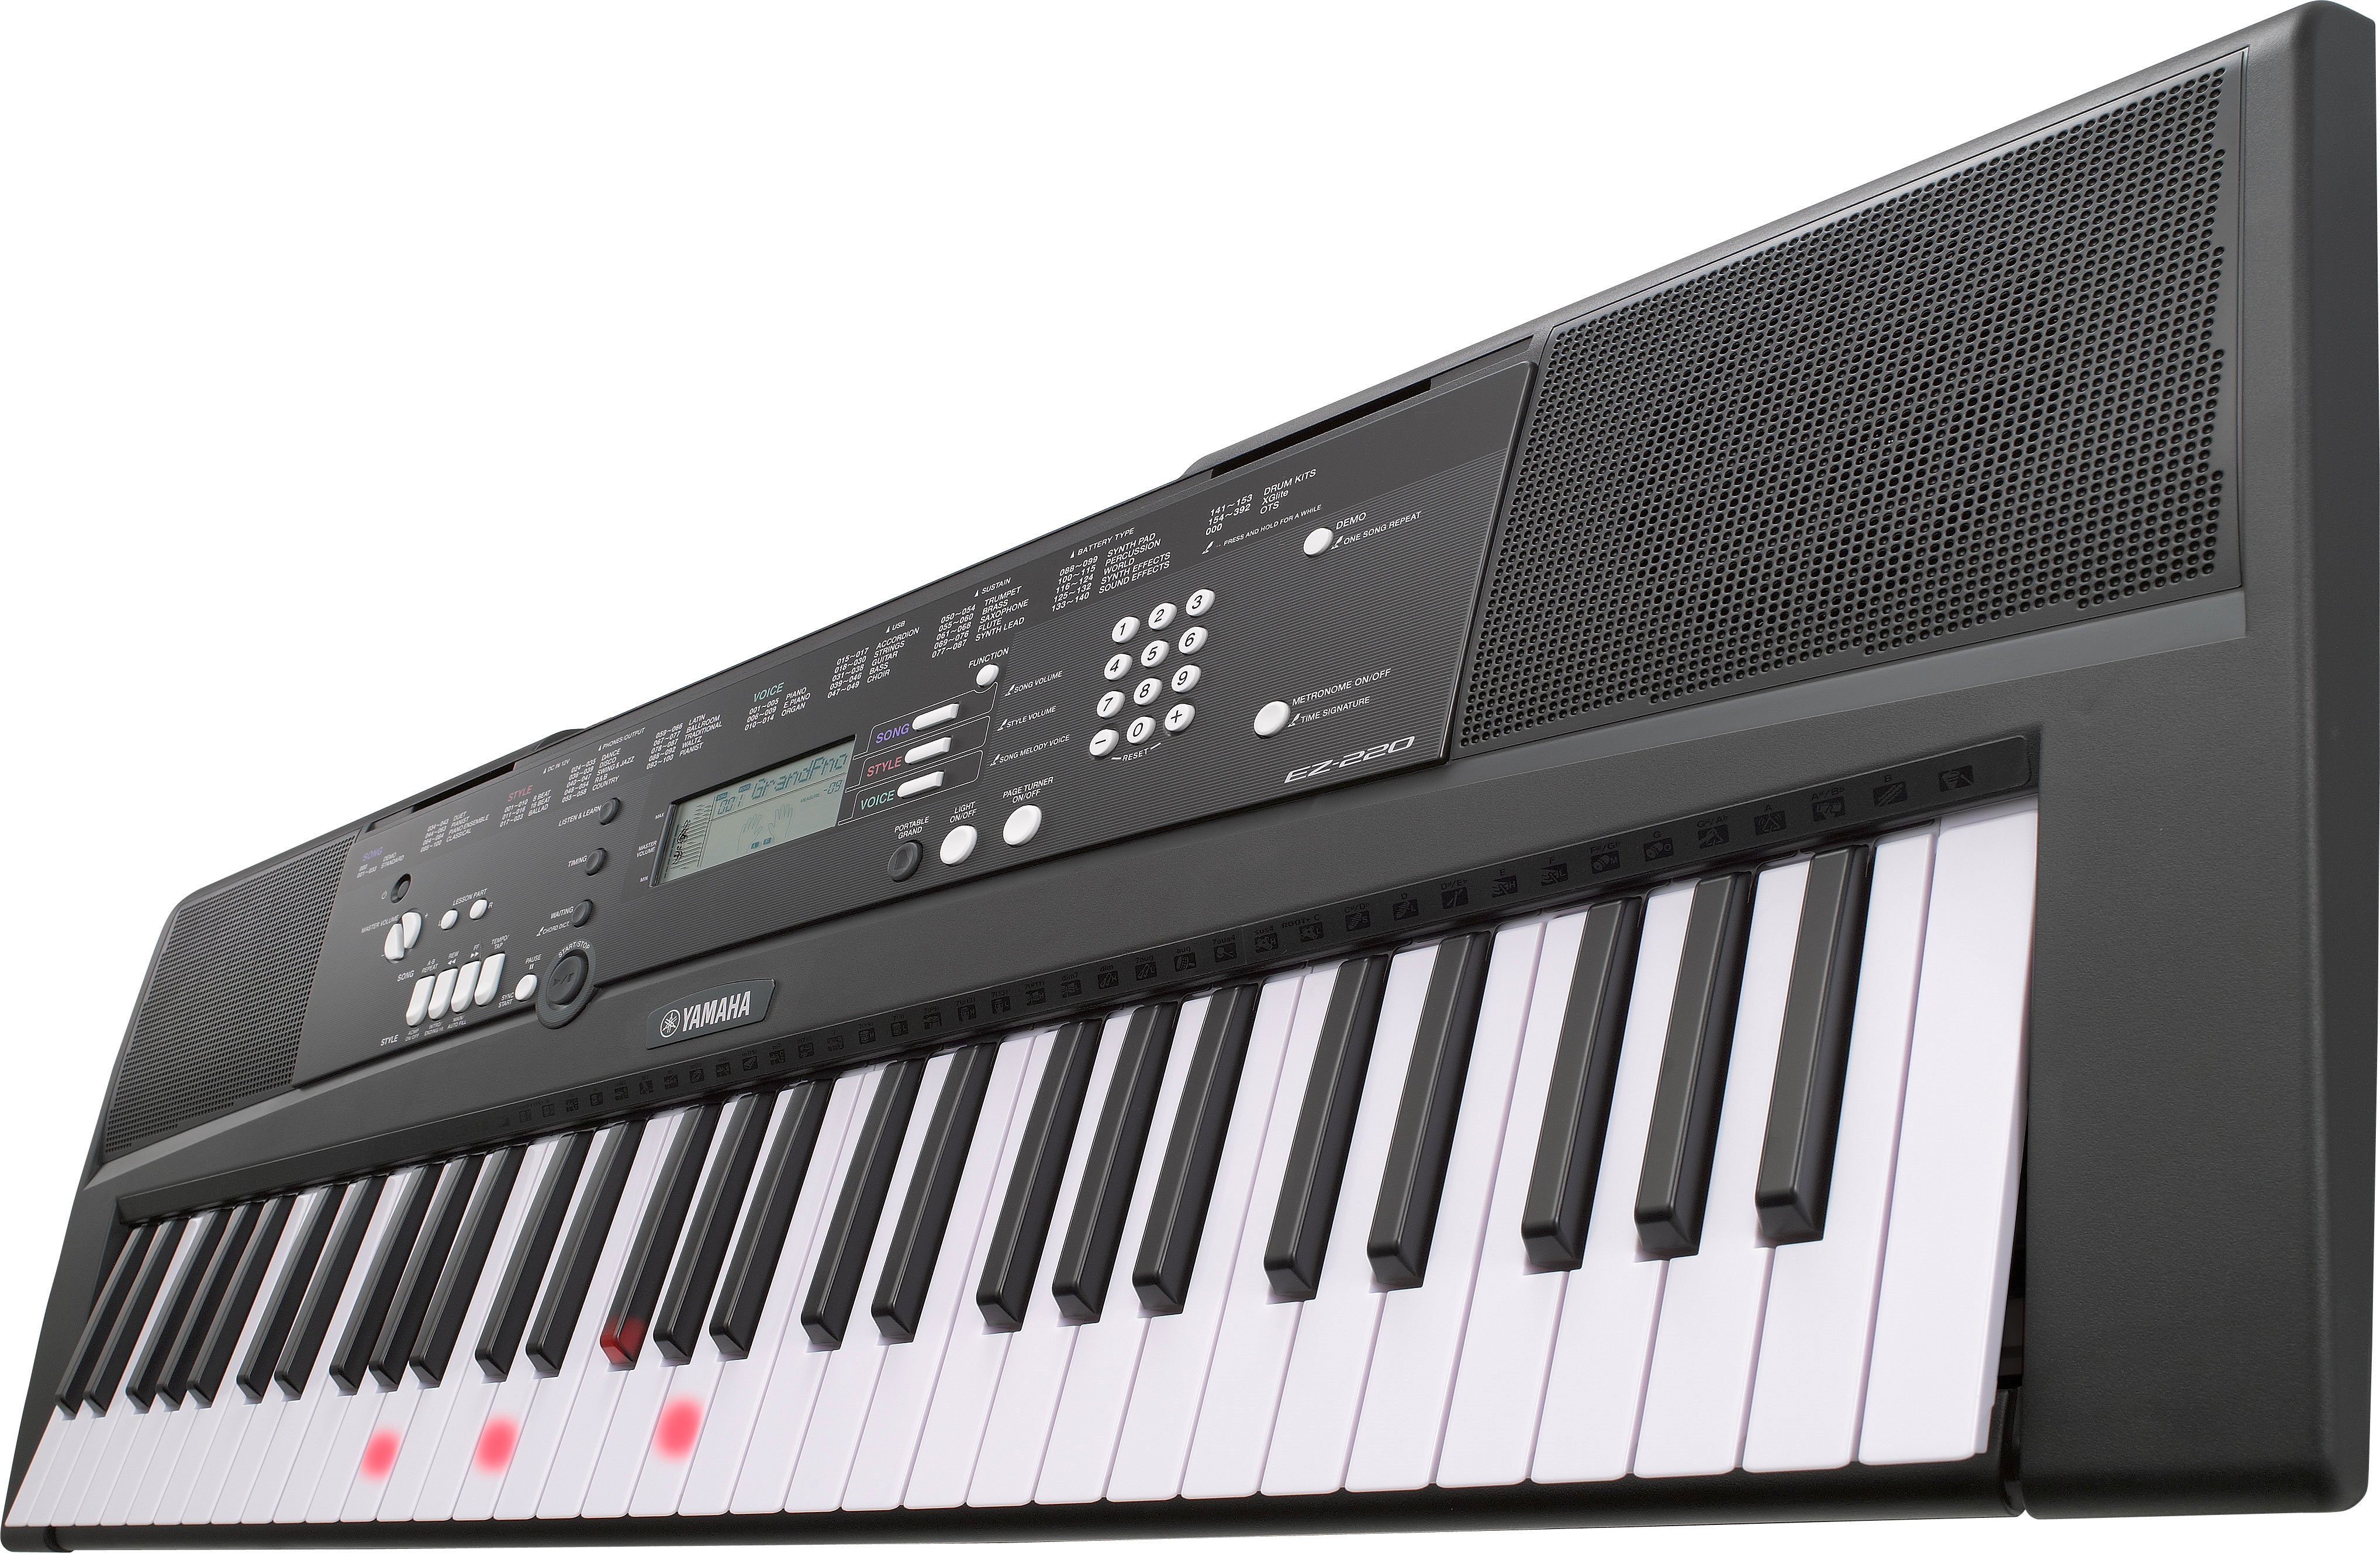 Leggio Originale Yamaha per tastiera Yamaha EZ220 EZj220 PSRE433 EZ 220 PSR E433 